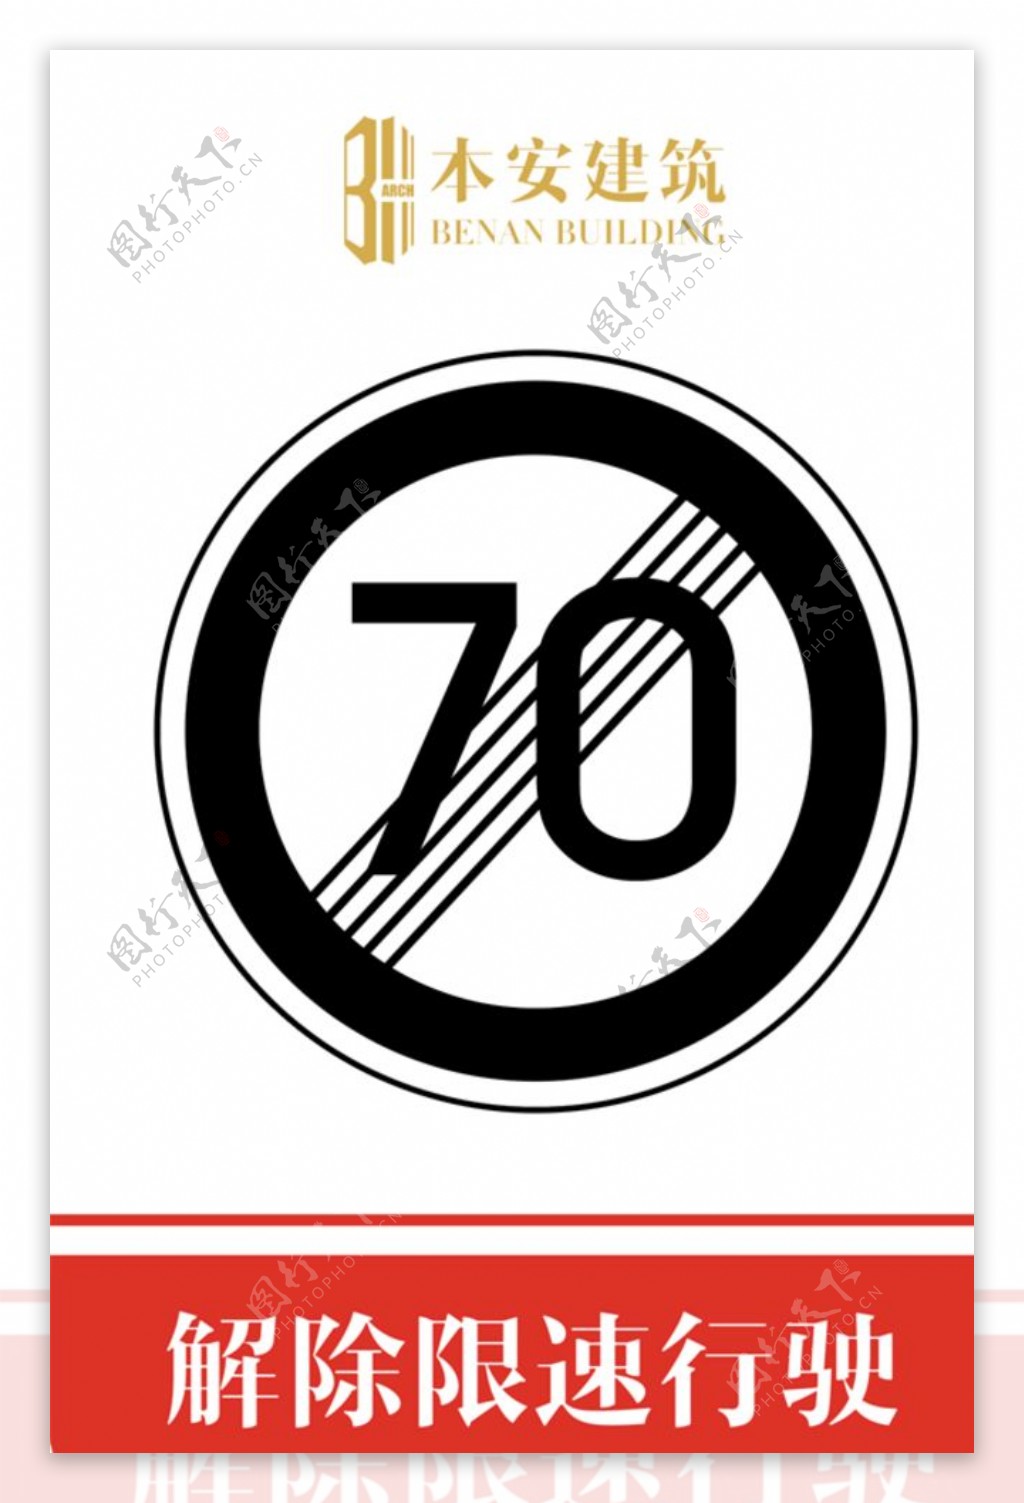 解除限速行使70公里交通标识